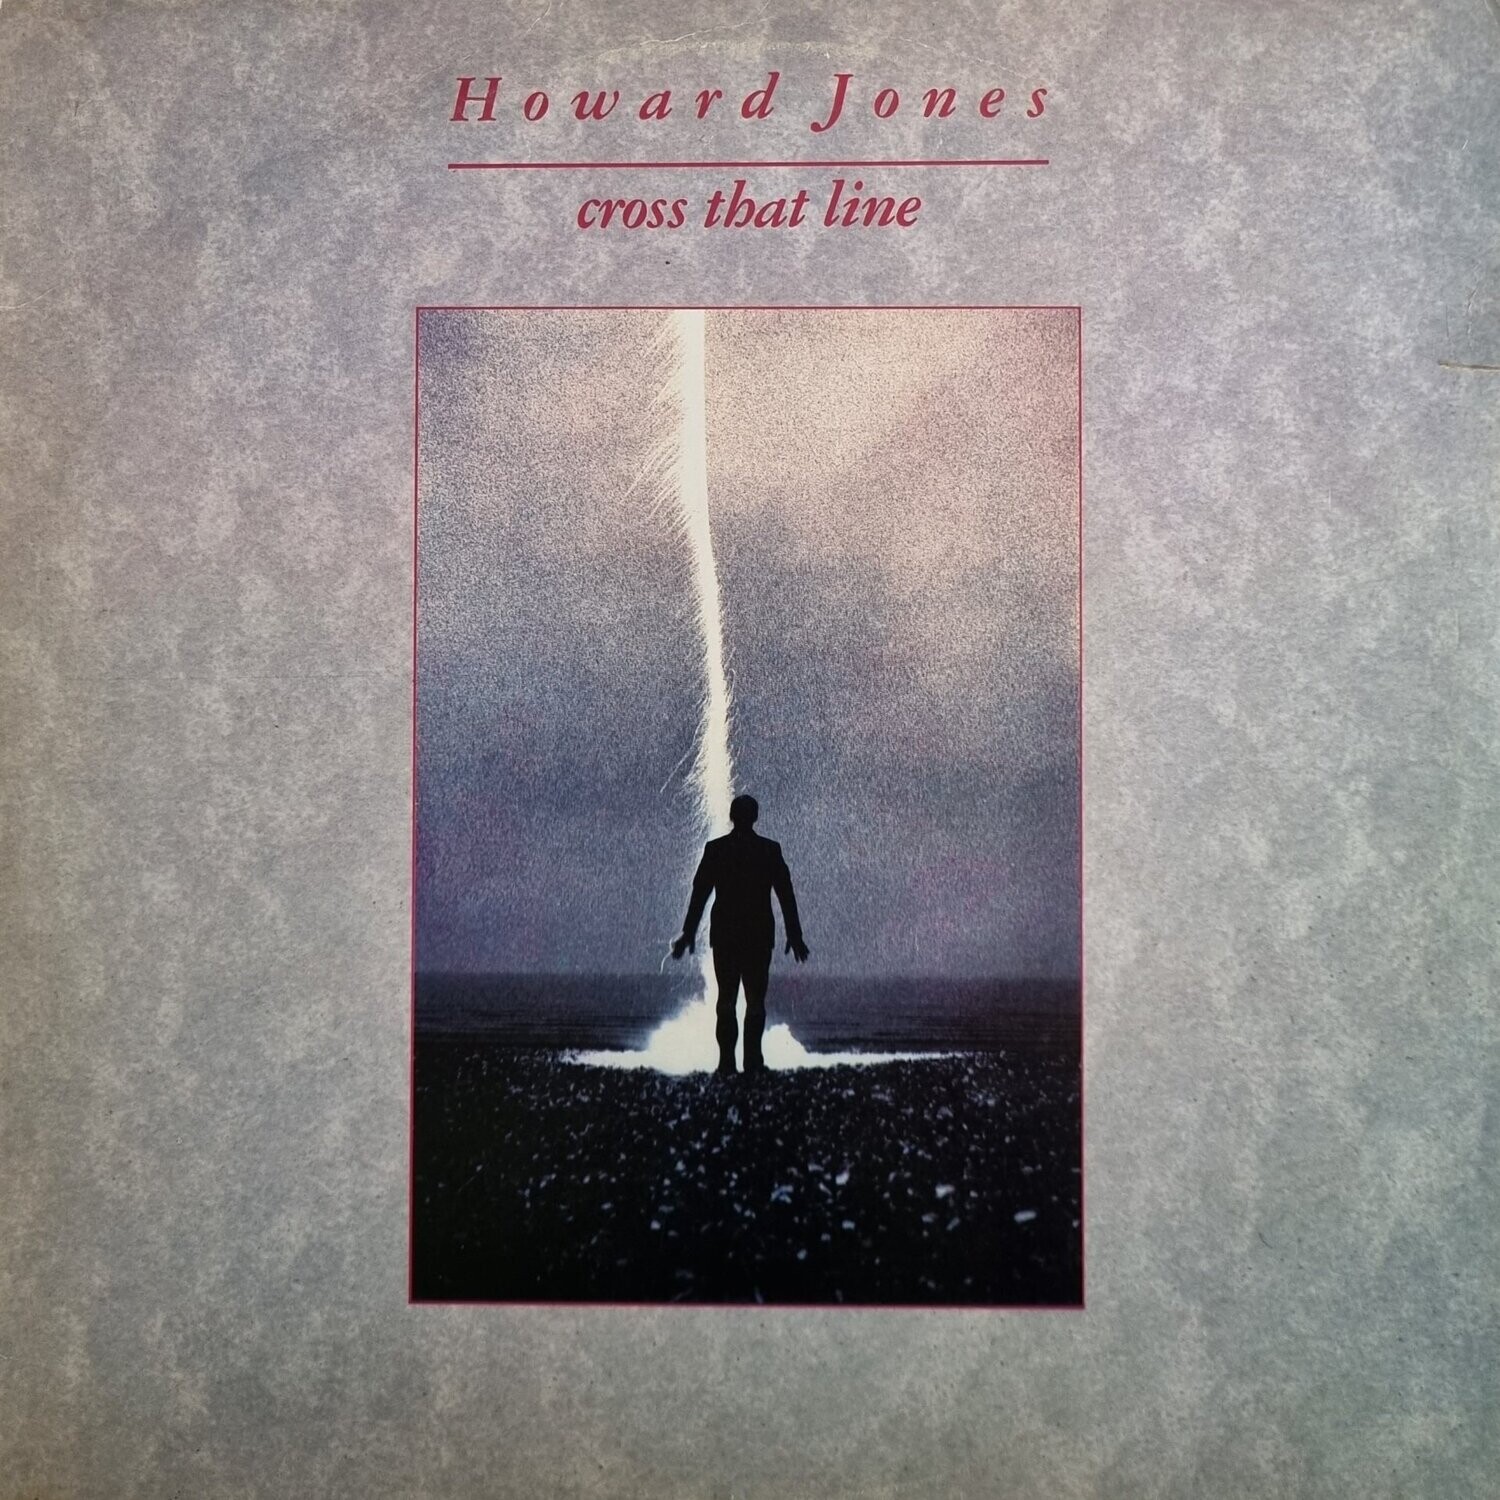 Howard Jones – Cross That Line (1989)